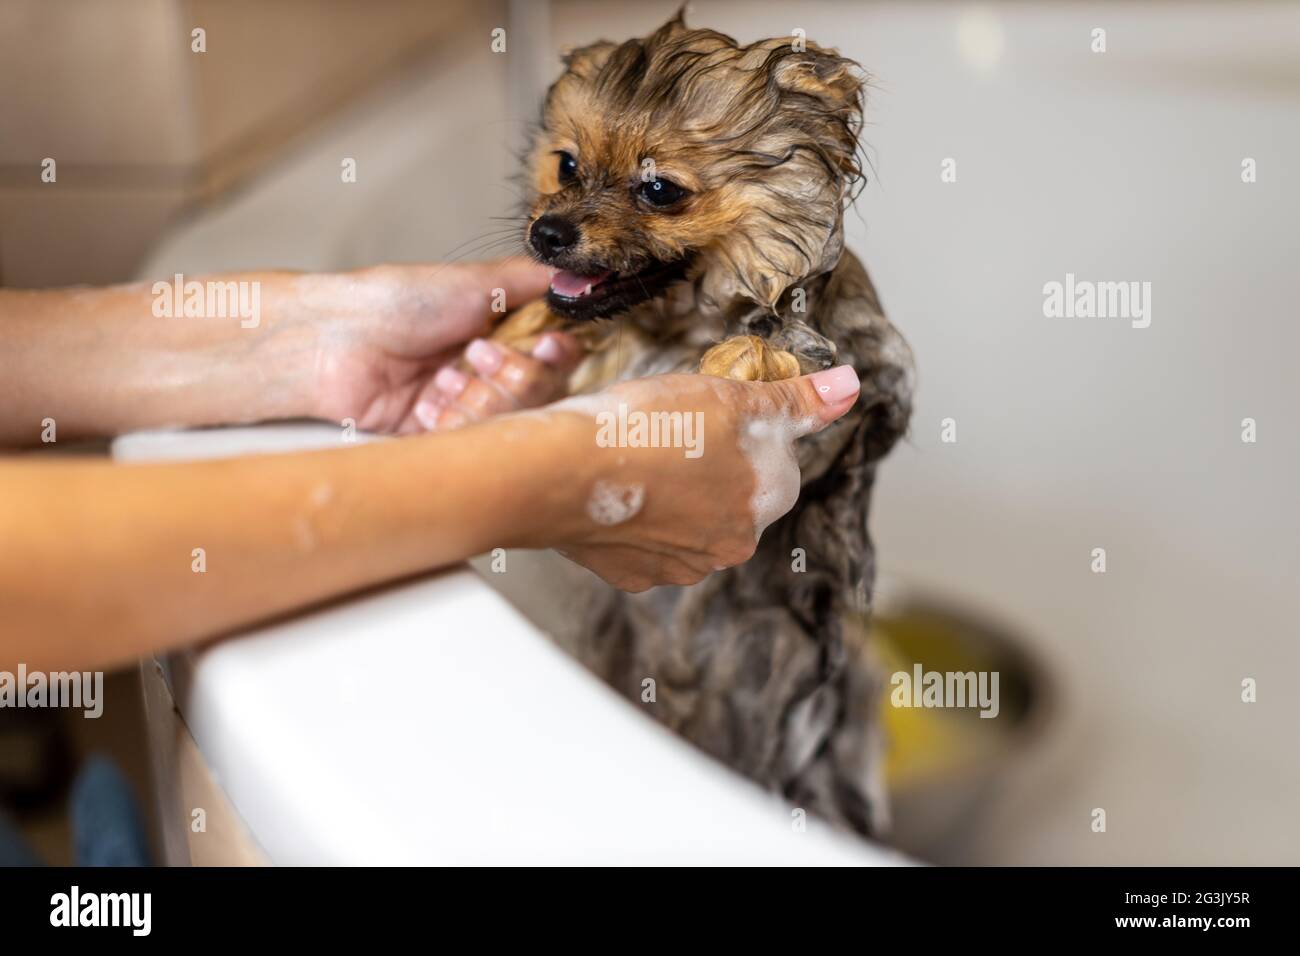 Molto piccolo cane Pomeraniano. Prende un bagno, due mani del proprietario puliscono l'animale domestico in un bagno bianco, l'animale felice guarda la persona con grande amore Foto Stock